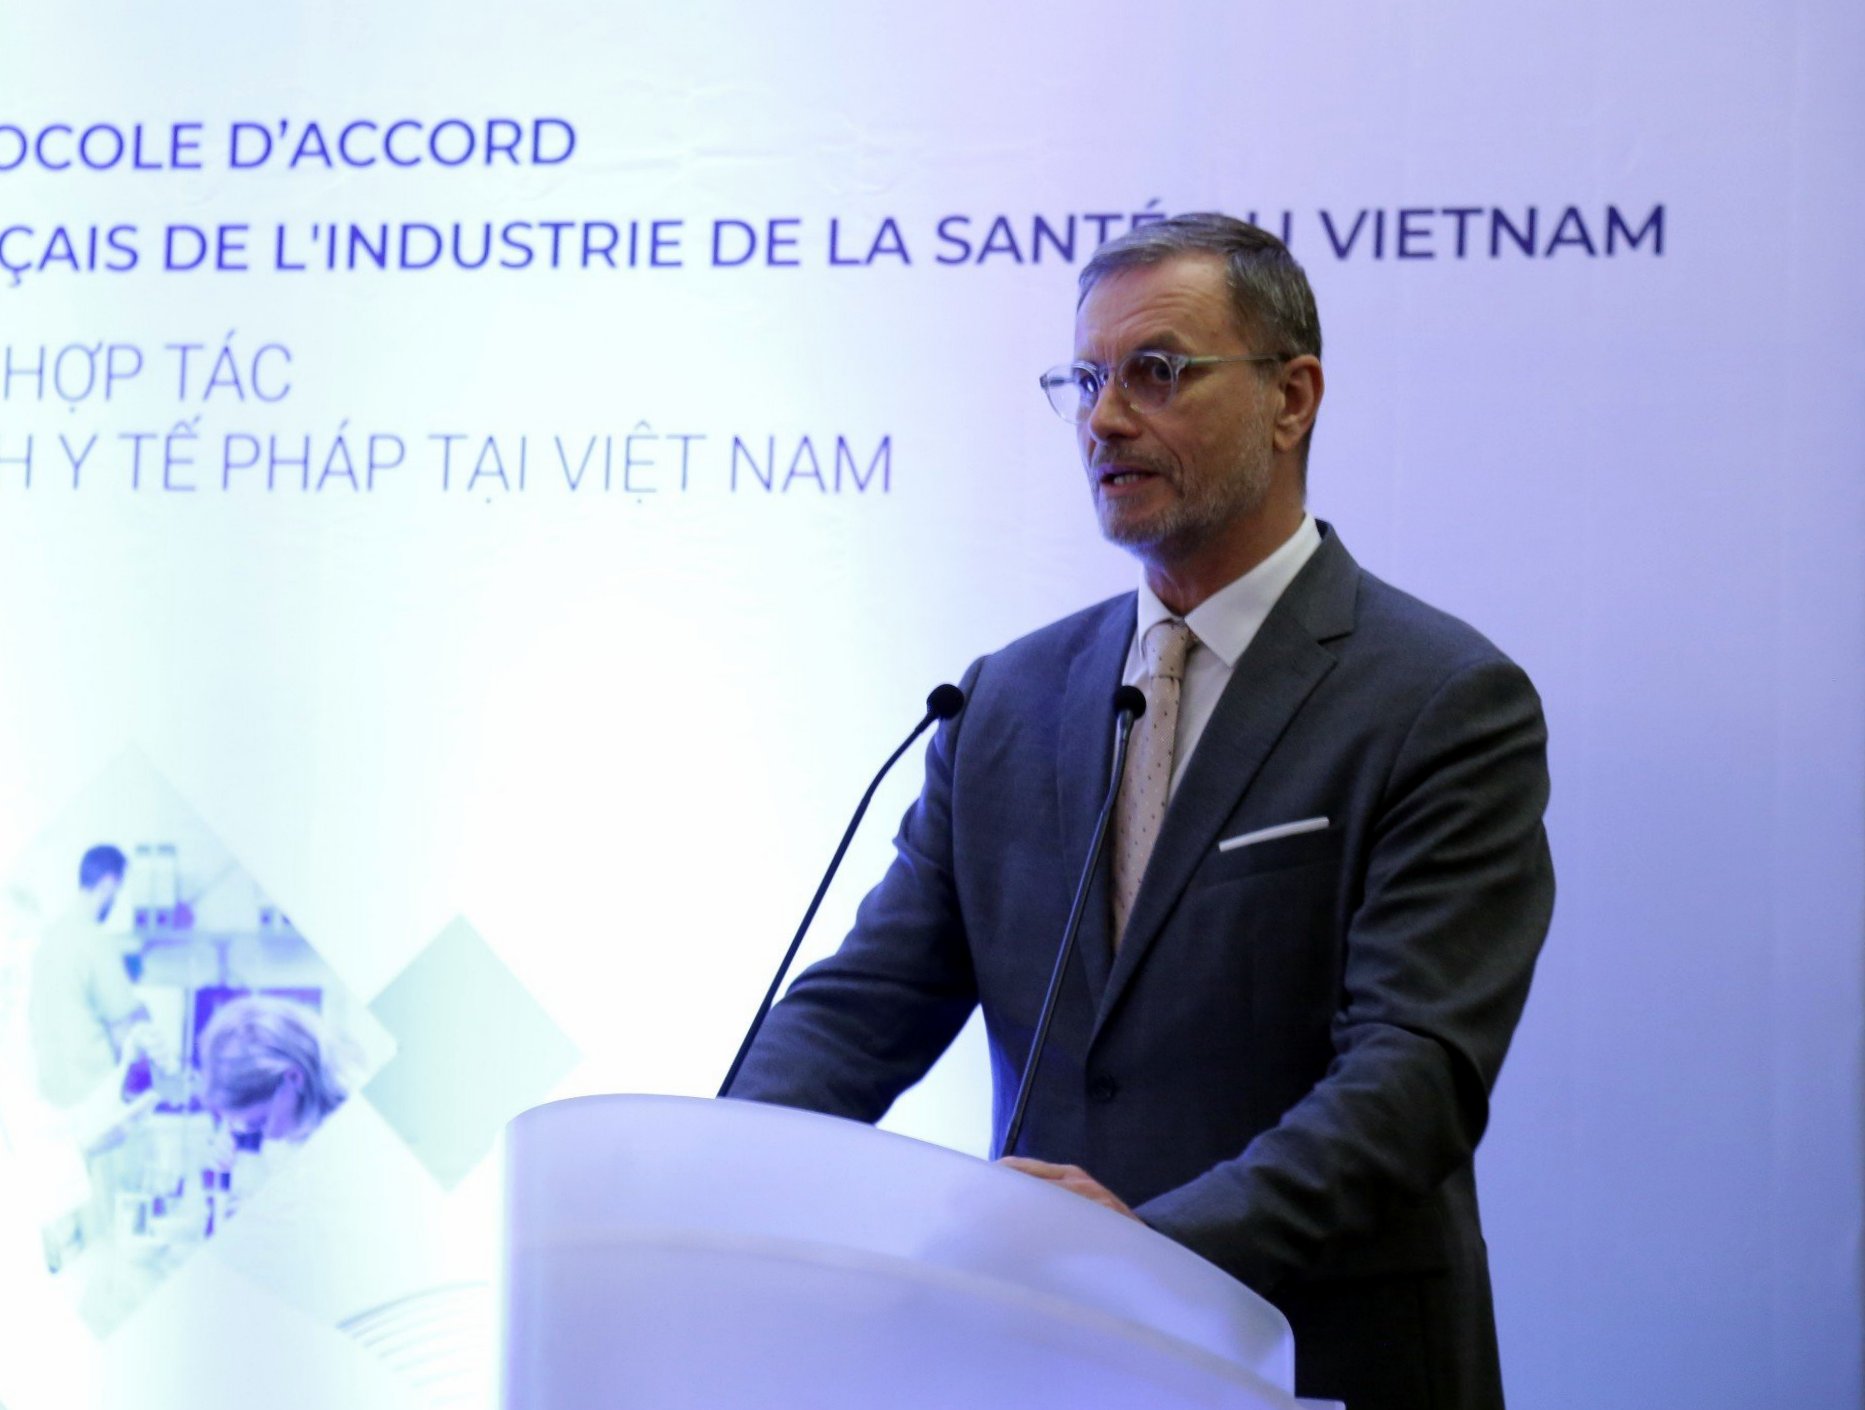 Ông Olivier Brochet - Đại sứ đặc mệnh toàn quyền Cộng hòa Pháp tại Việt Nam phát biểu tại buổi lễ 